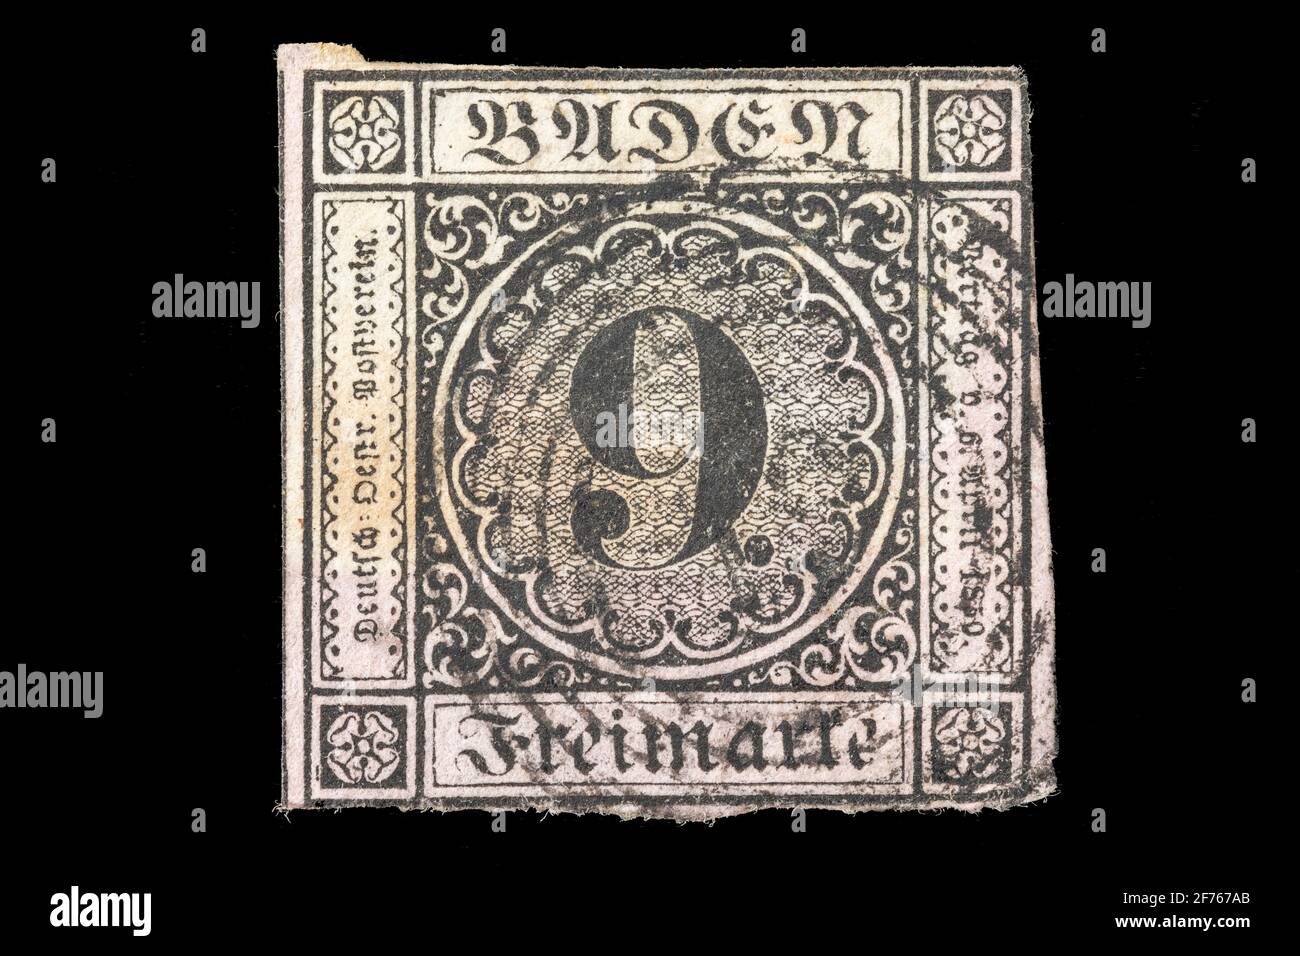 Vintage annullato francobollo da Baden circa 1851. Esempio estremamente raro di un francobollo tedesco non forato 9 Kreuzer pre-unificazione. Foto Stock